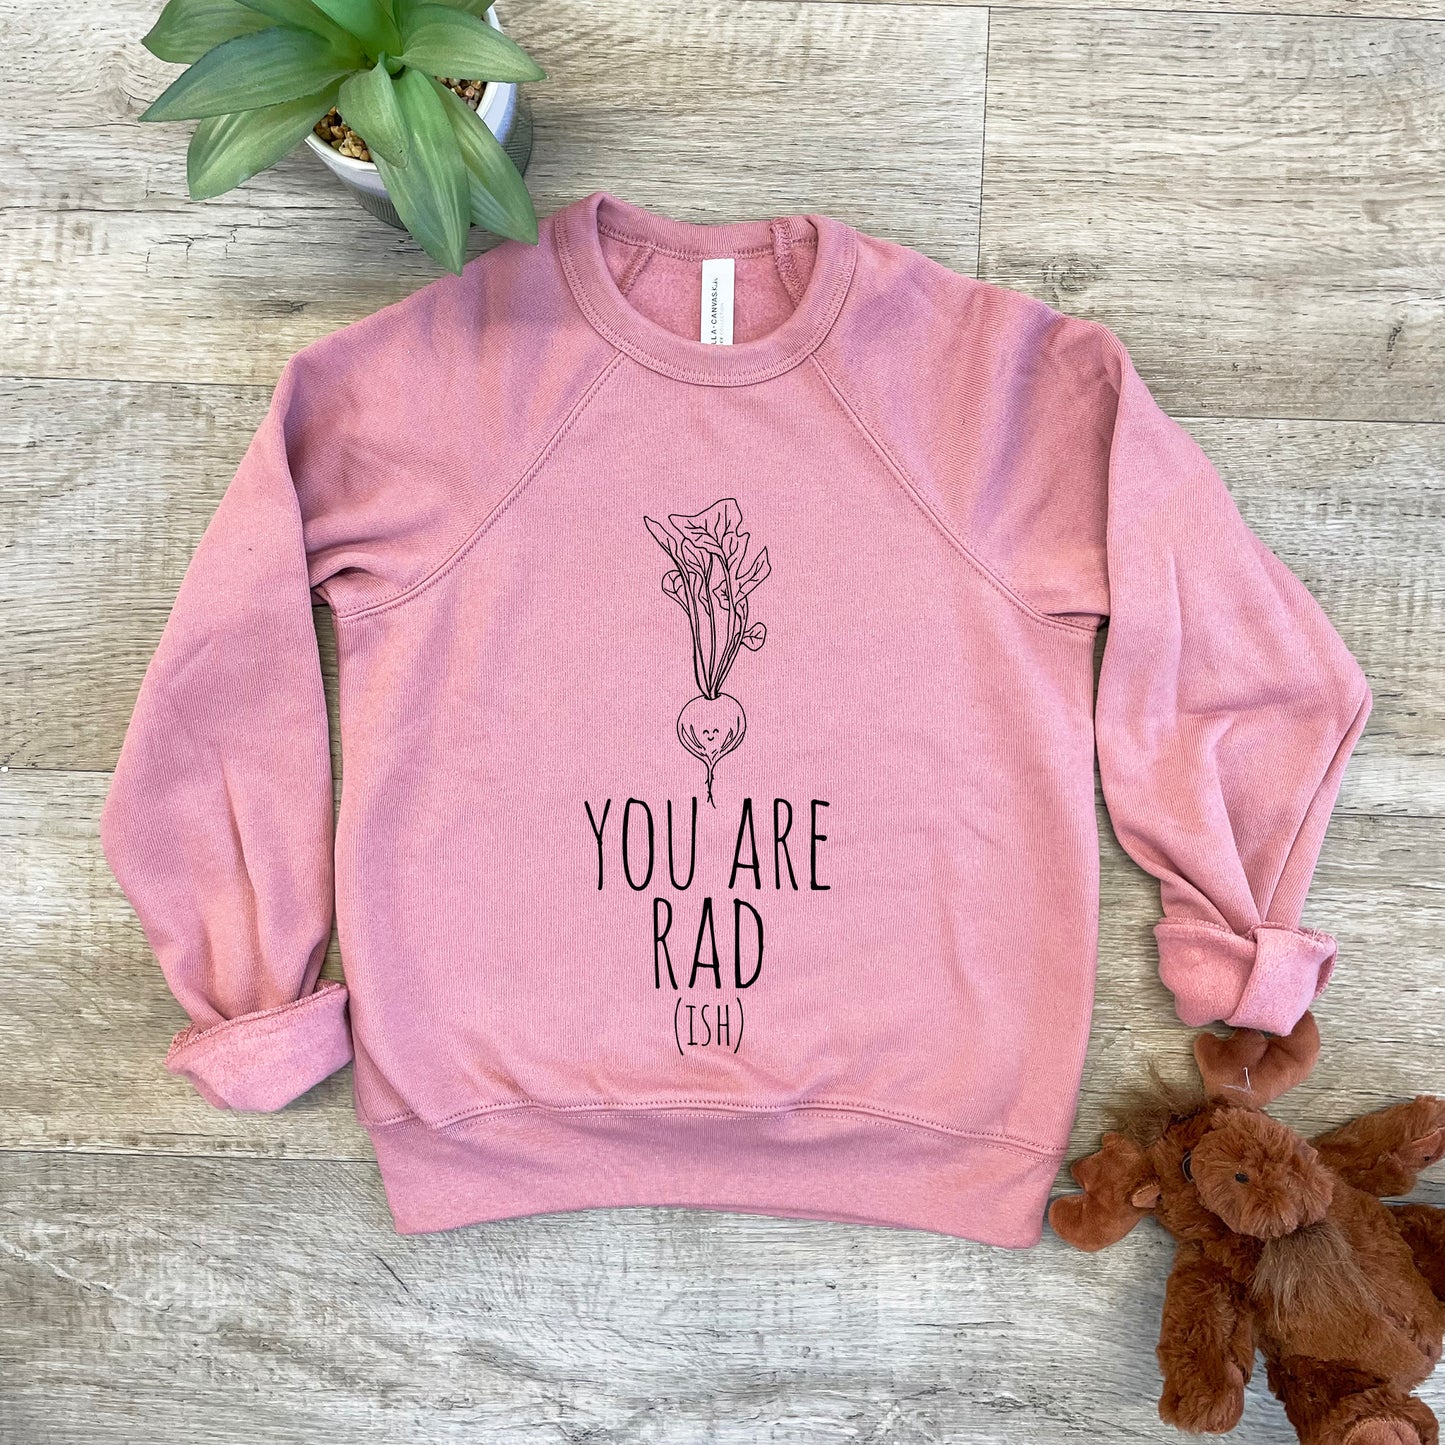 You Are Rad(ish) - Kid's Sweatshirt - Heather Gray or Mauve